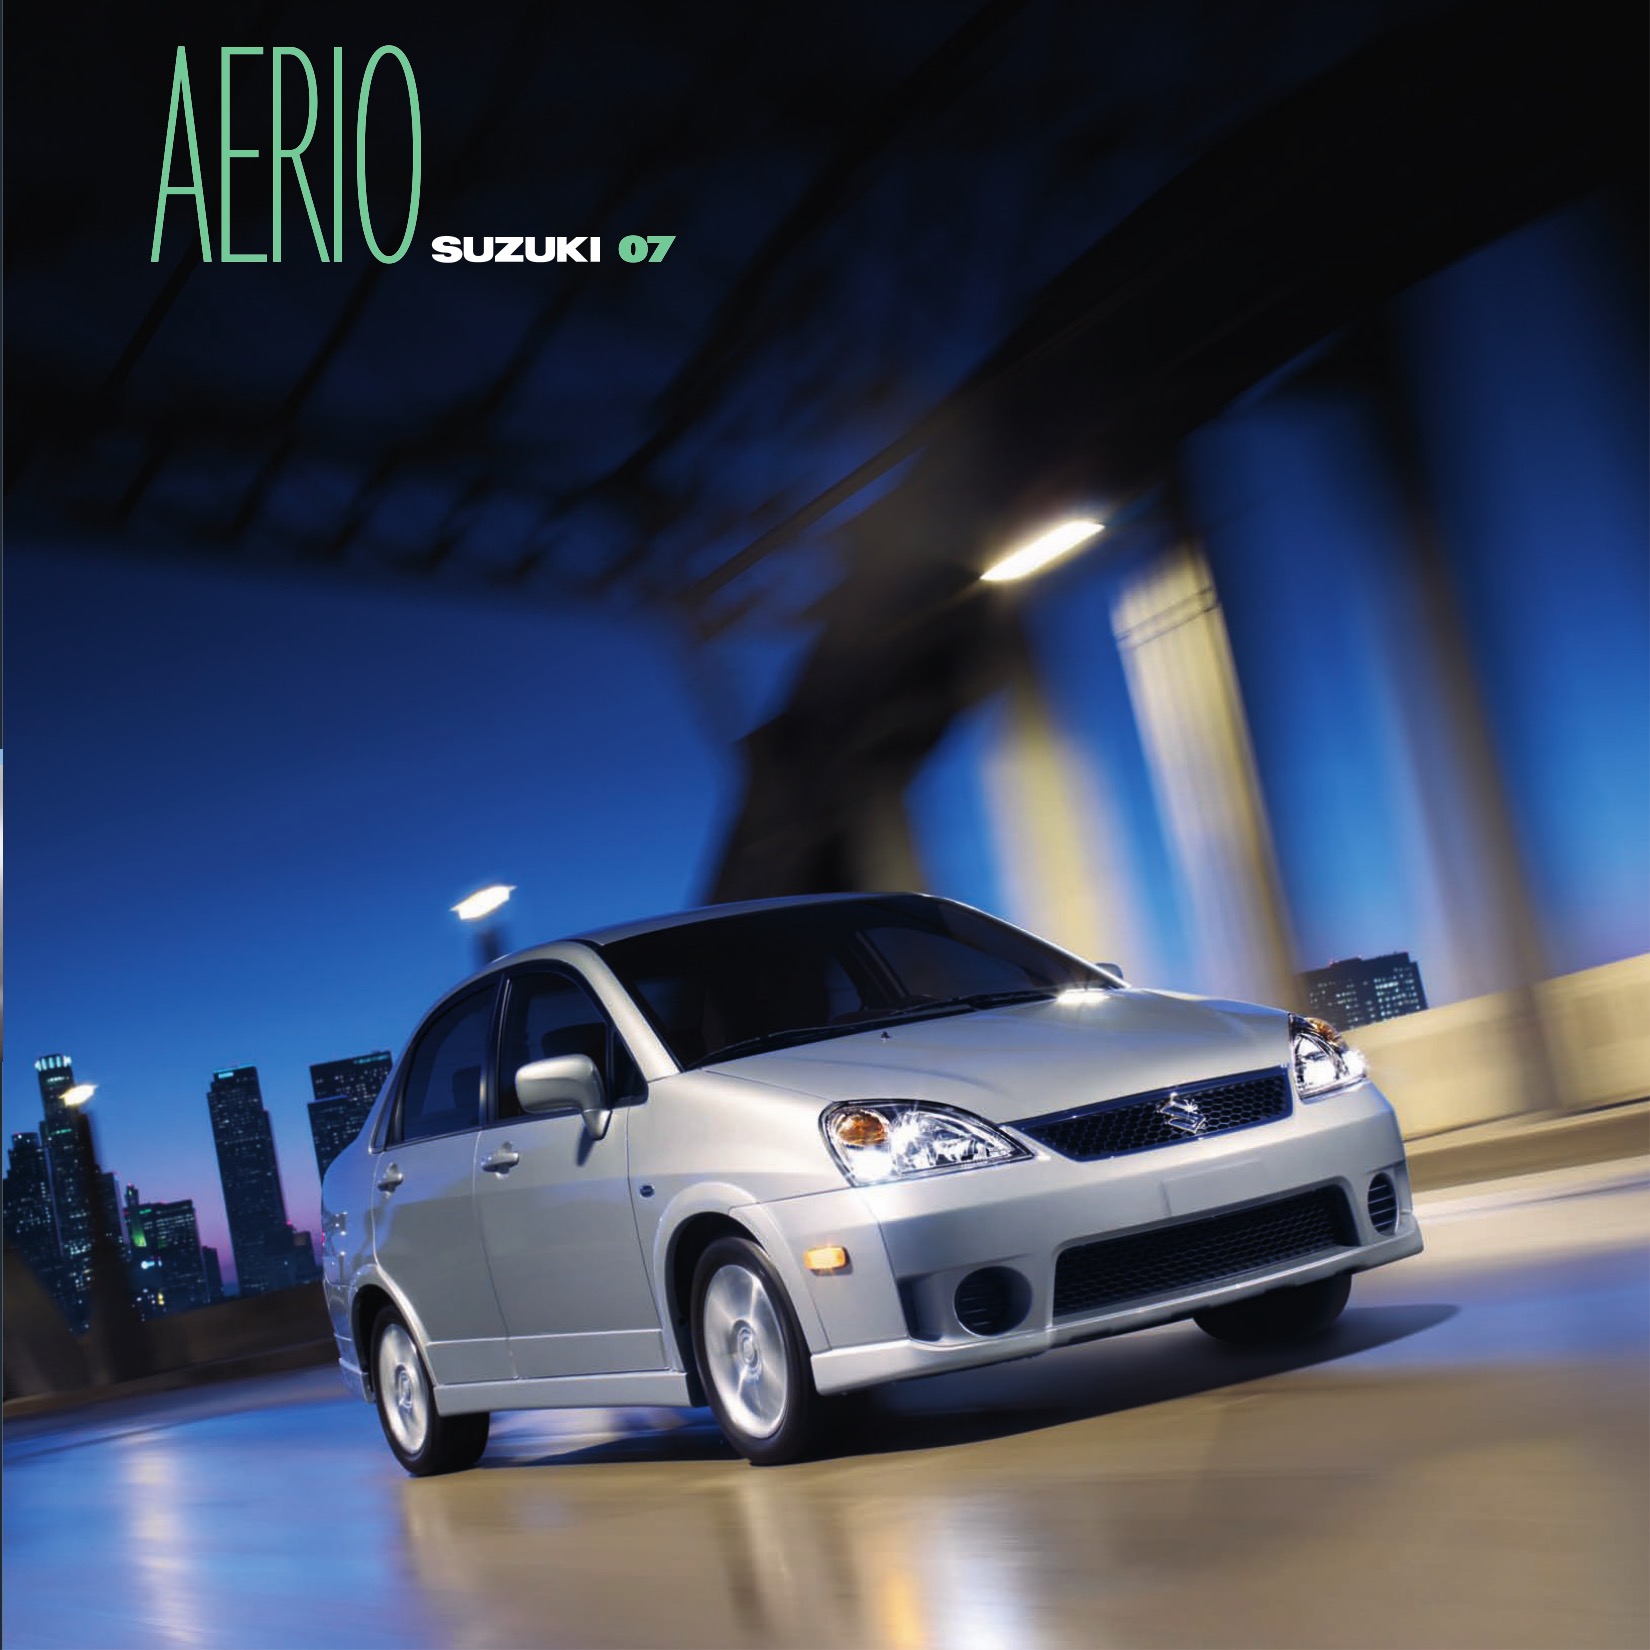 2007 Suzuki Aerio Brochure